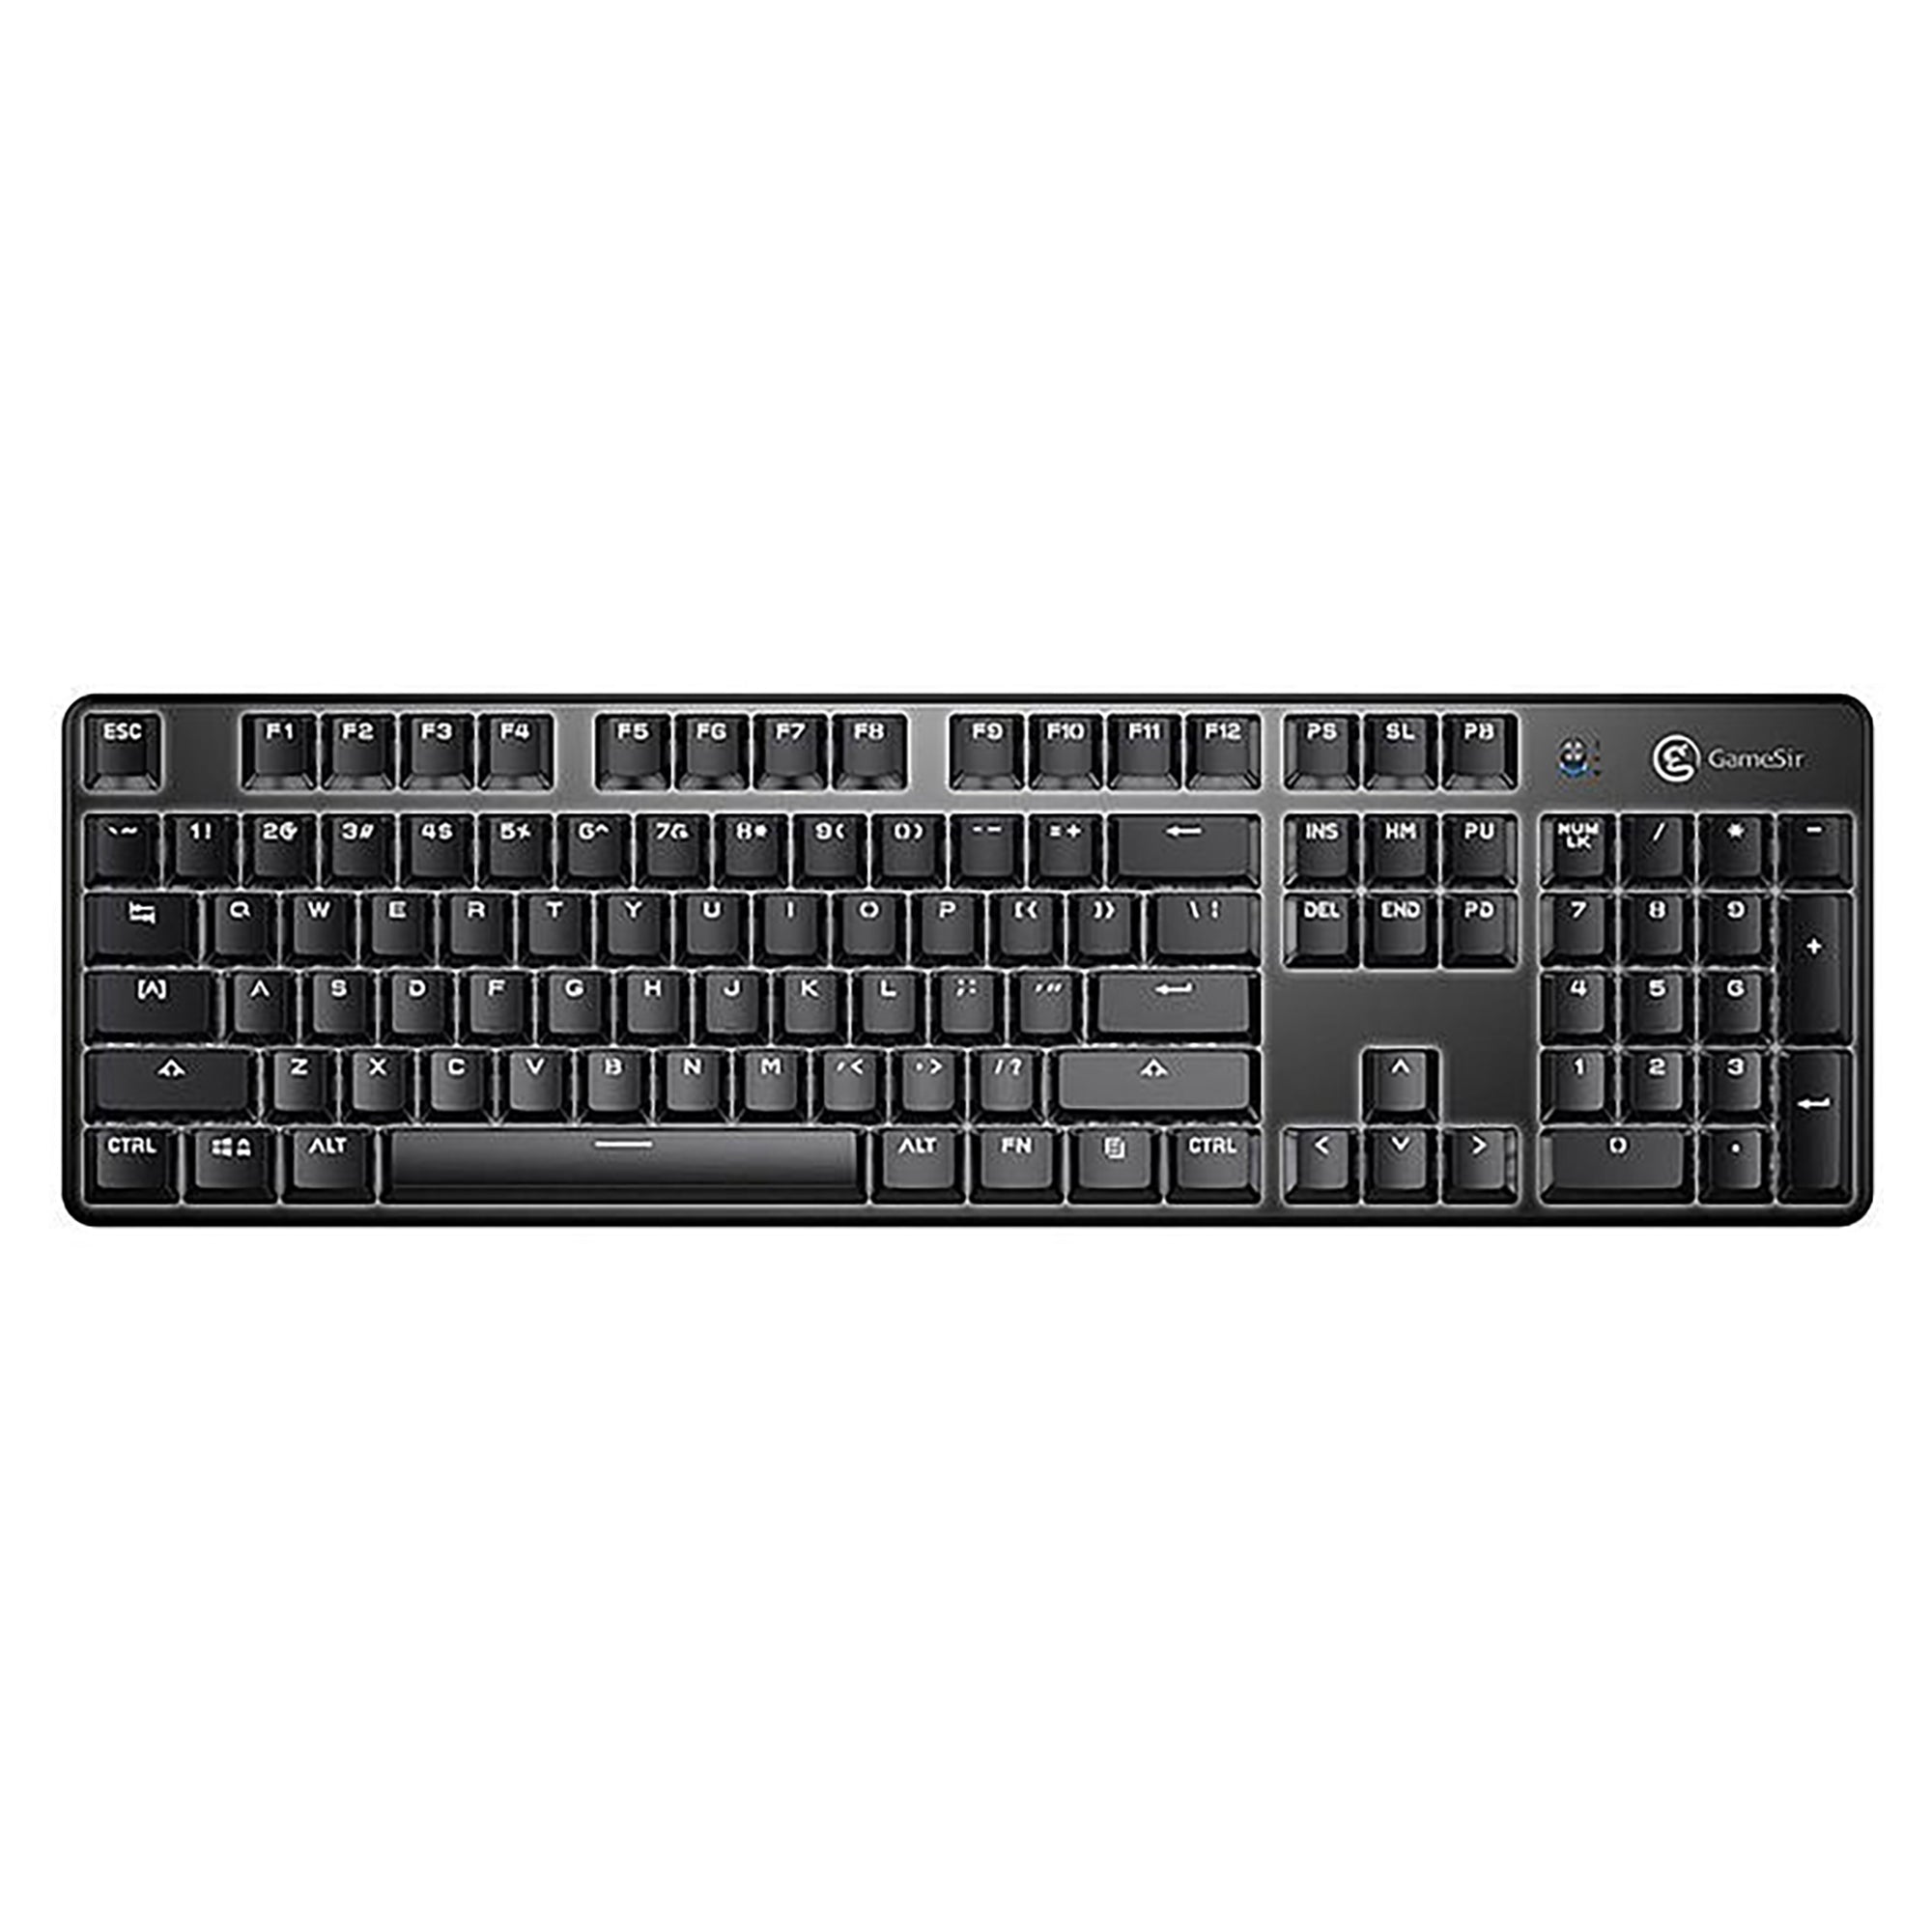 Gamesir GK300 Wireless Mechanical Gaming Keyboard, Black